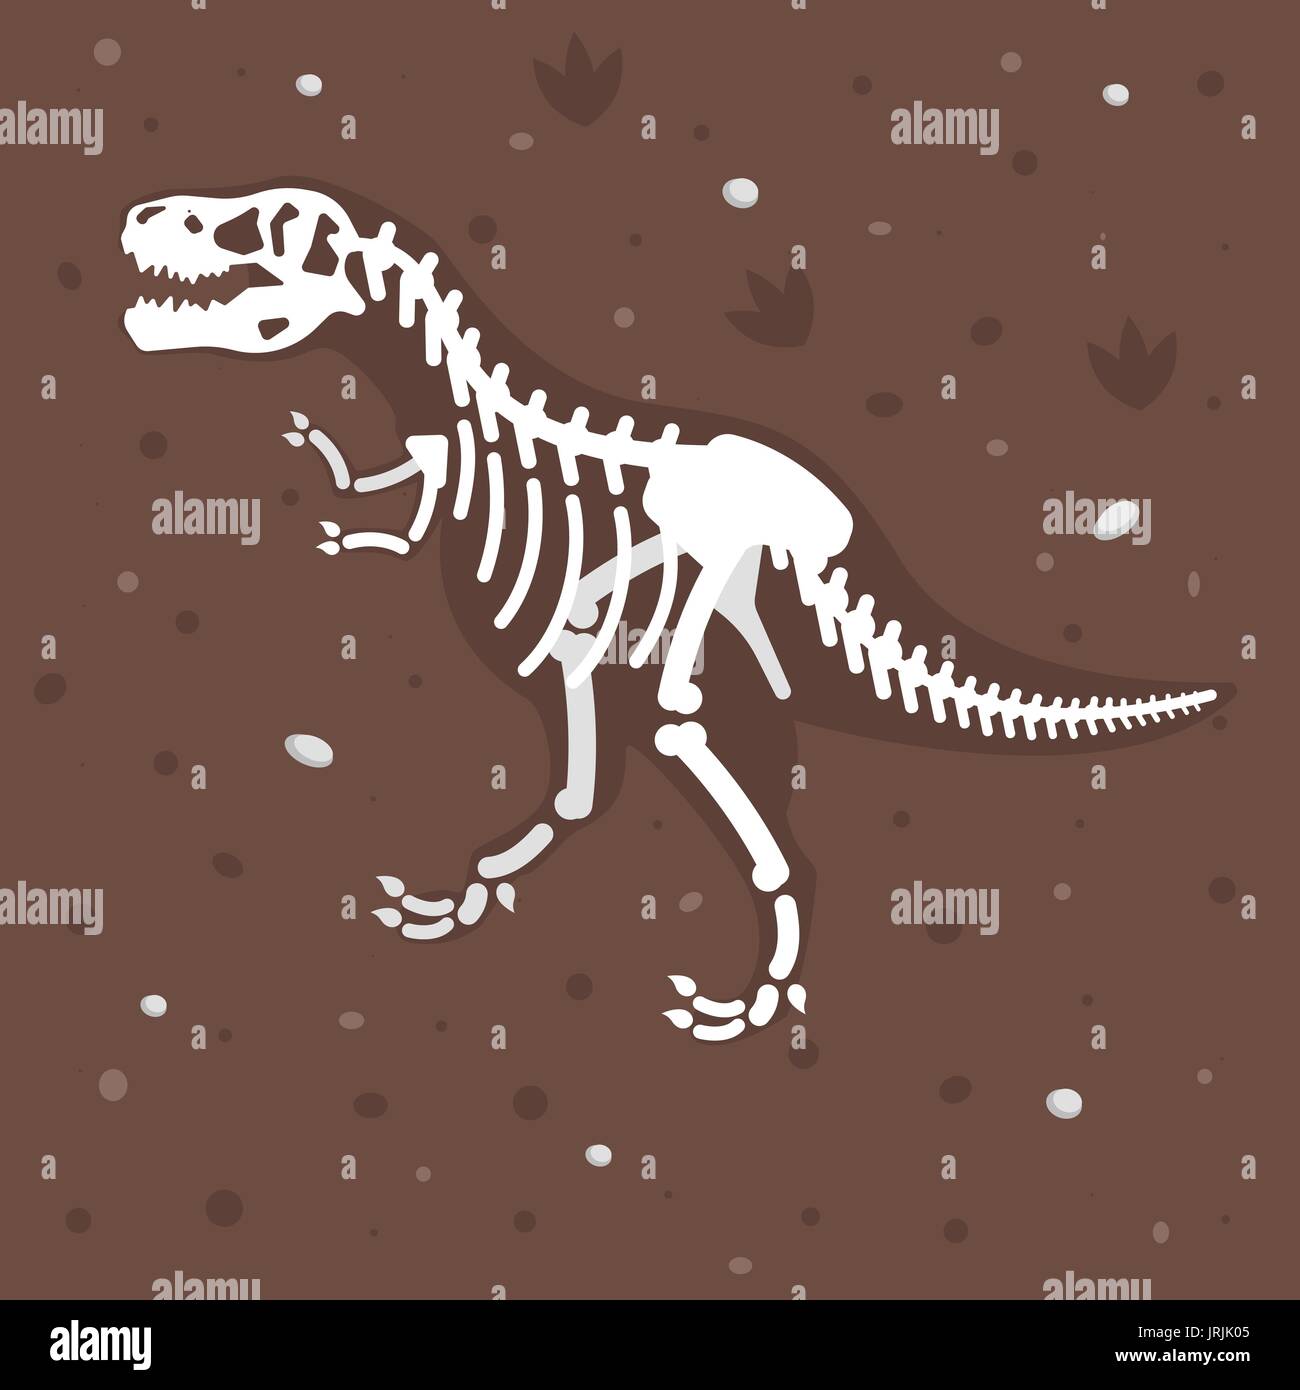 Flache Vektorgrafik von Dinosaurier-Skelett in den Boden. Prähistorische Raubtier - Tyrannosaurus Rex. Stock Vektor